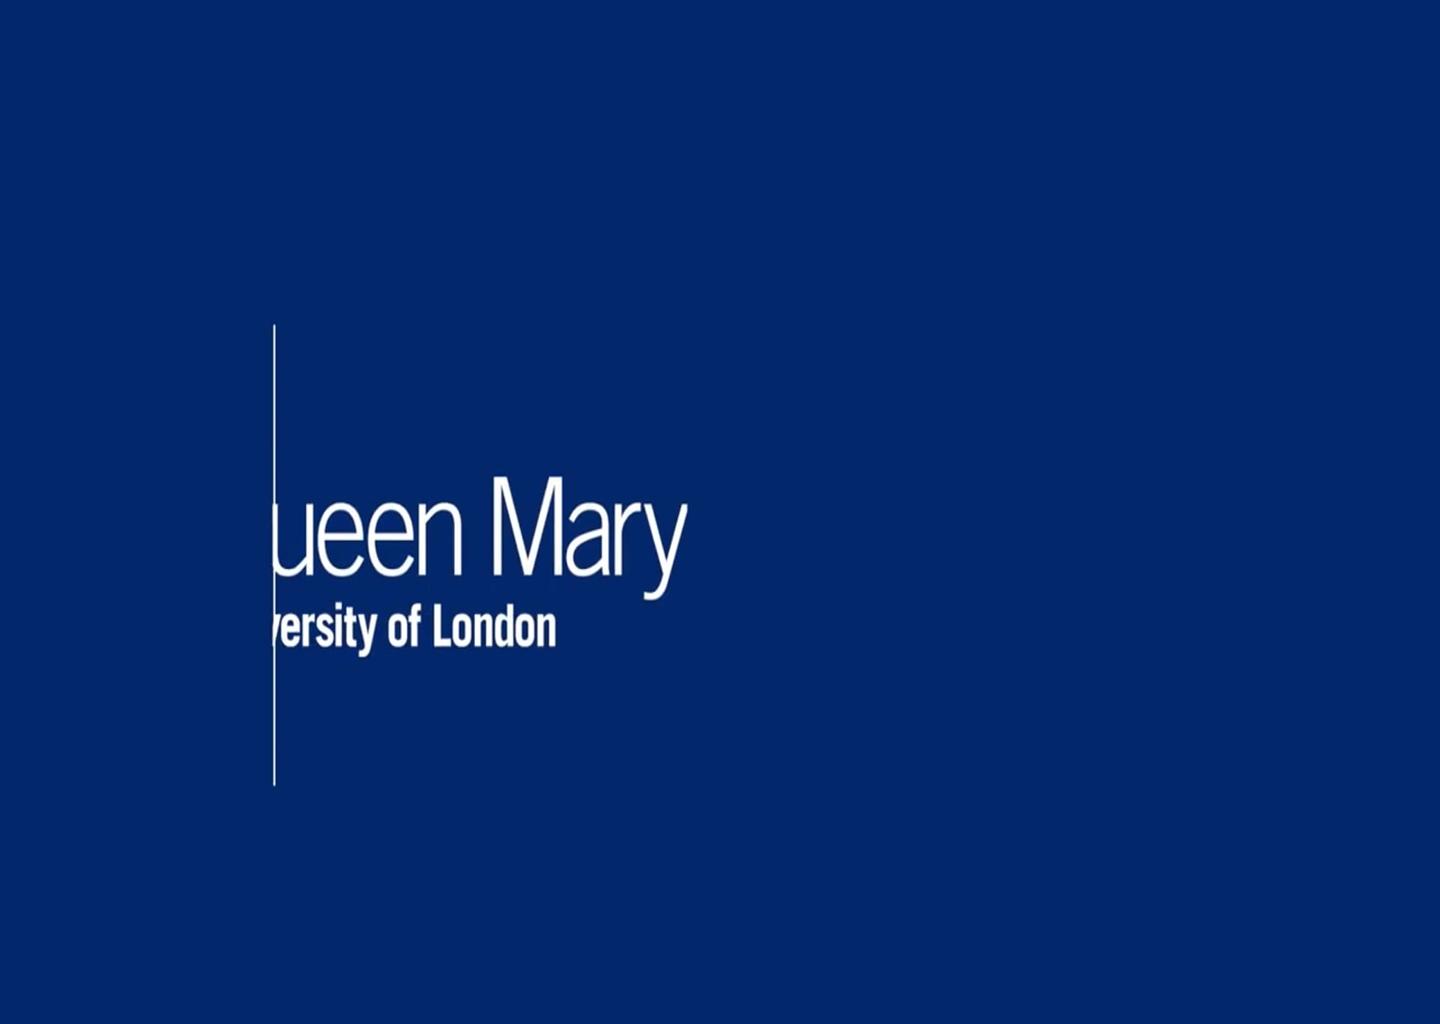 Queen Mary University of London là một đại học danh tiếng ở Anh, cung cấp nhiều chương trình đào tạo hấp dẫn và đội ngũ giảng viên tuyệt vời. Hãy xem những hình ảnh về trường đại học này để tìm hiểu thêm về môi trường học tập và sinh hoạt của các sinh viên tại đây.